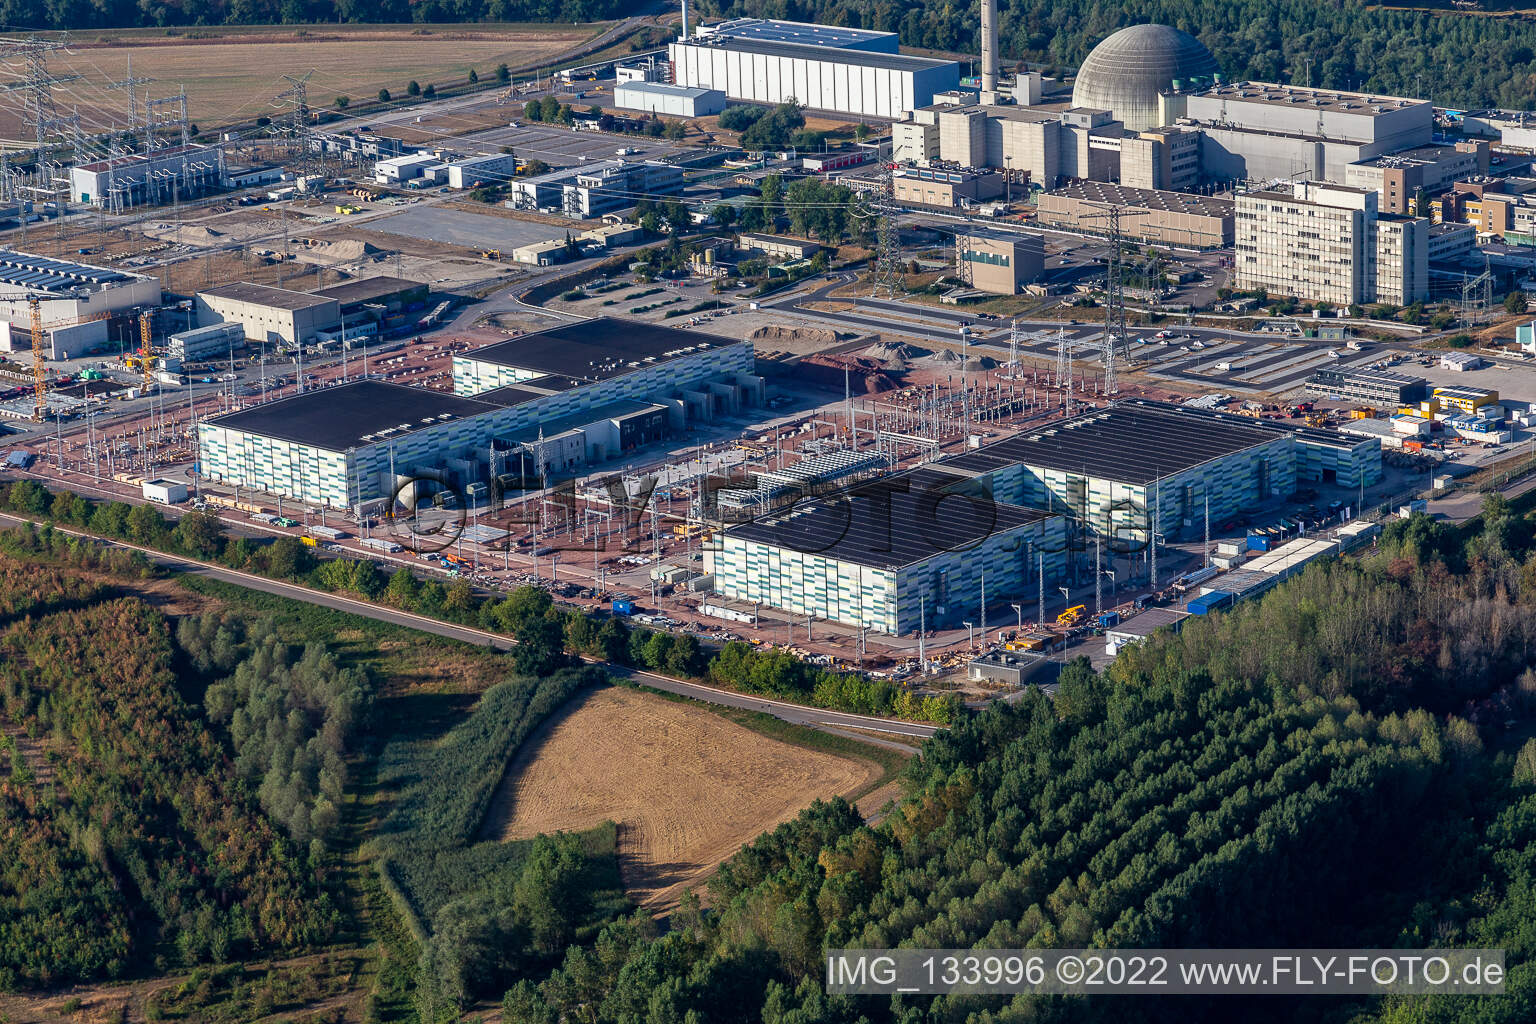 TransnetBW GmbH, sous-station à courant continu sur le site de la centrale nucléaire déclassée Philippsburg à Philippsburg dans le département Bade-Wurtemberg, Allemagne d'en haut